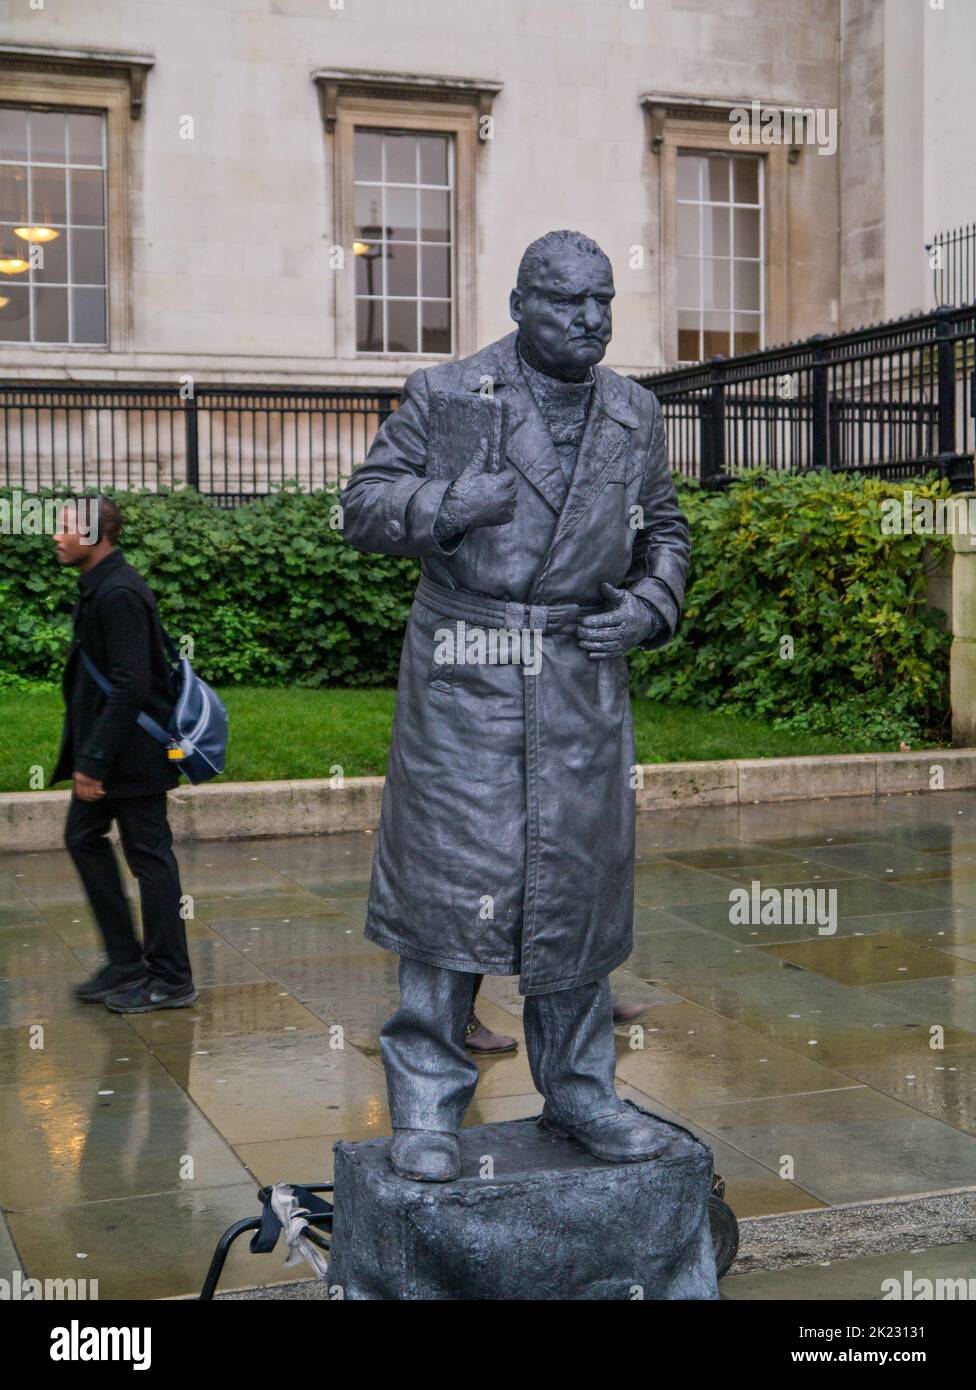 A living statue, Trafalgar Square, London, UK Stock Photo